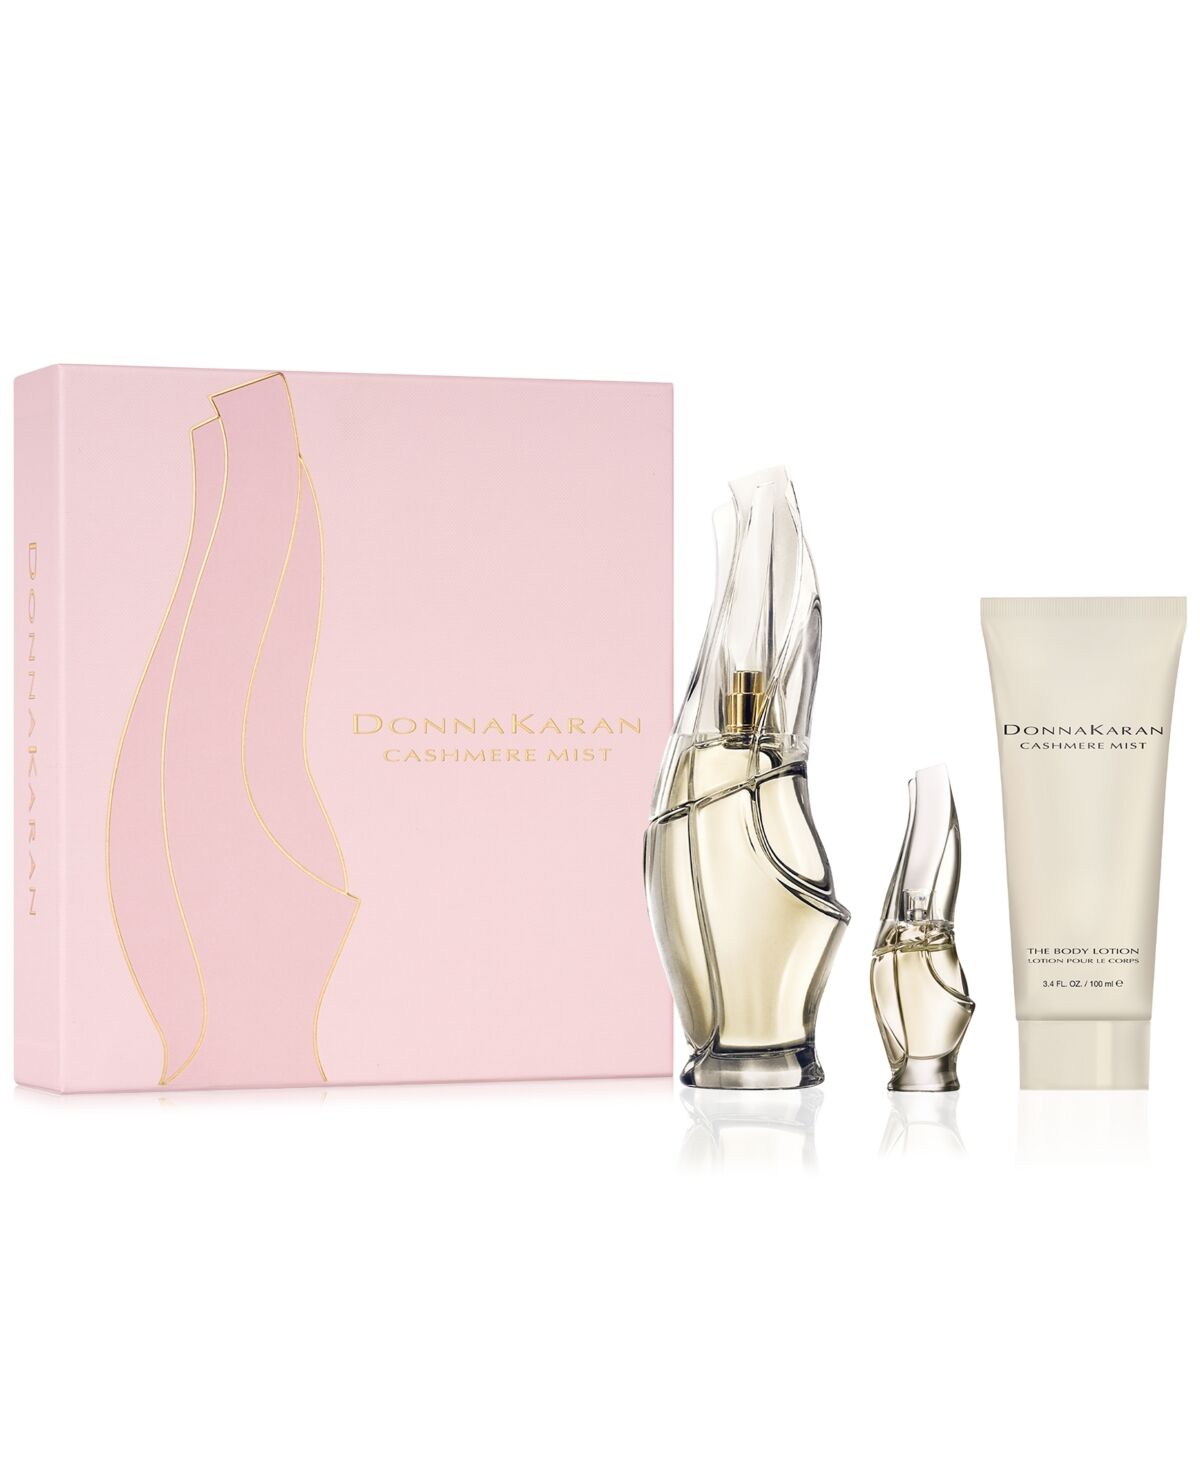 Donna Karan 3-Pc. Cashmere Mist Eau de Parfum Gift Set